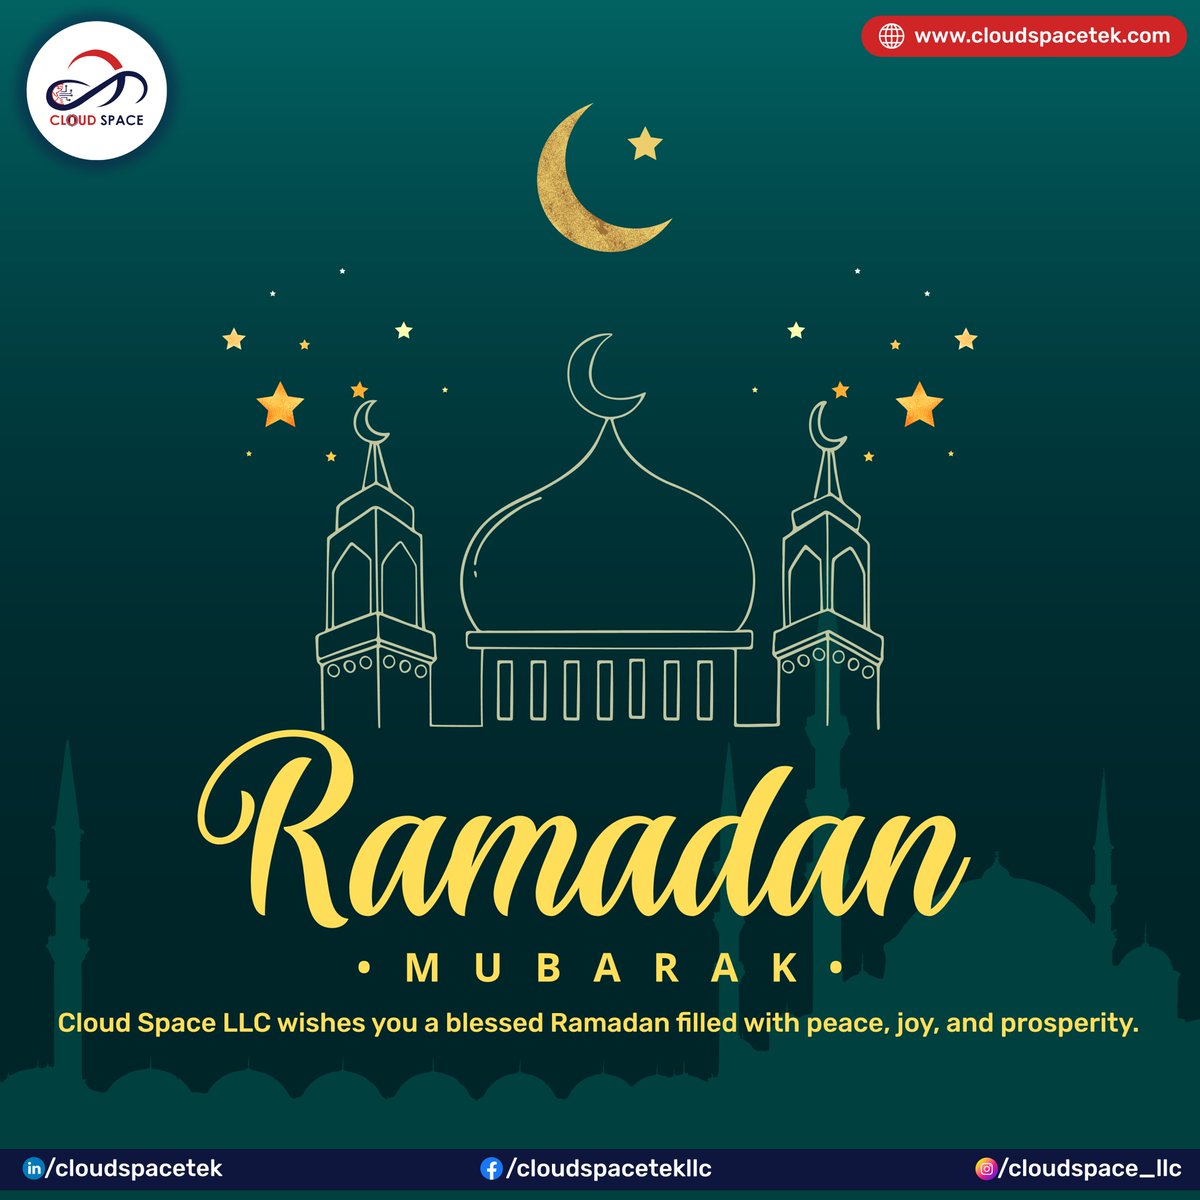 𝐂𝐥𝐨𝐮𝐝 𝐒𝐩𝐚𝐜𝐞 𝐋𝐋𝐂 𝐰𝐢𝐬𝐡𝐞𝐬 𝐲𝐨𝐮 𝐚 𝐛𝐥𝐞𝐬𝐬𝐞𝐝 𝐑𝐚𝐦𝐚𝐝𝐚𝐧 𝐟𝐢𝐥𝐥𝐞𝐝 𝐰𝐢𝐭𝐡 𝐩𝐞𝐚𝐜𝐞, 𝐣𝐨𝐲, 𝐚𝐧𝐝 𝐩𝐫𝐨𝐬𝐩𝐞𝐫𝐢𝐭𝐲. #CloudSpaceLLC #RamadanMubarak #Blessings #Joy #Peace #Iftar #Suhoor #RamadanKareem